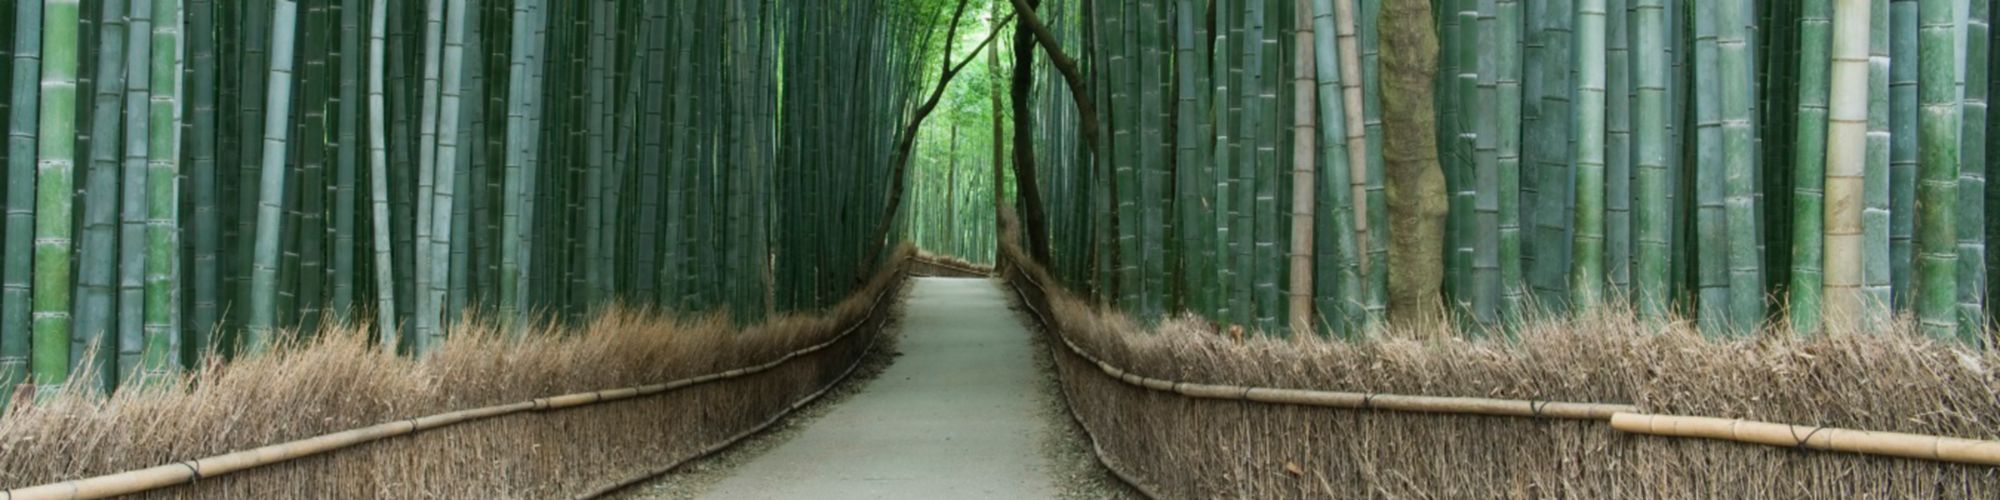 Path through the bamboos